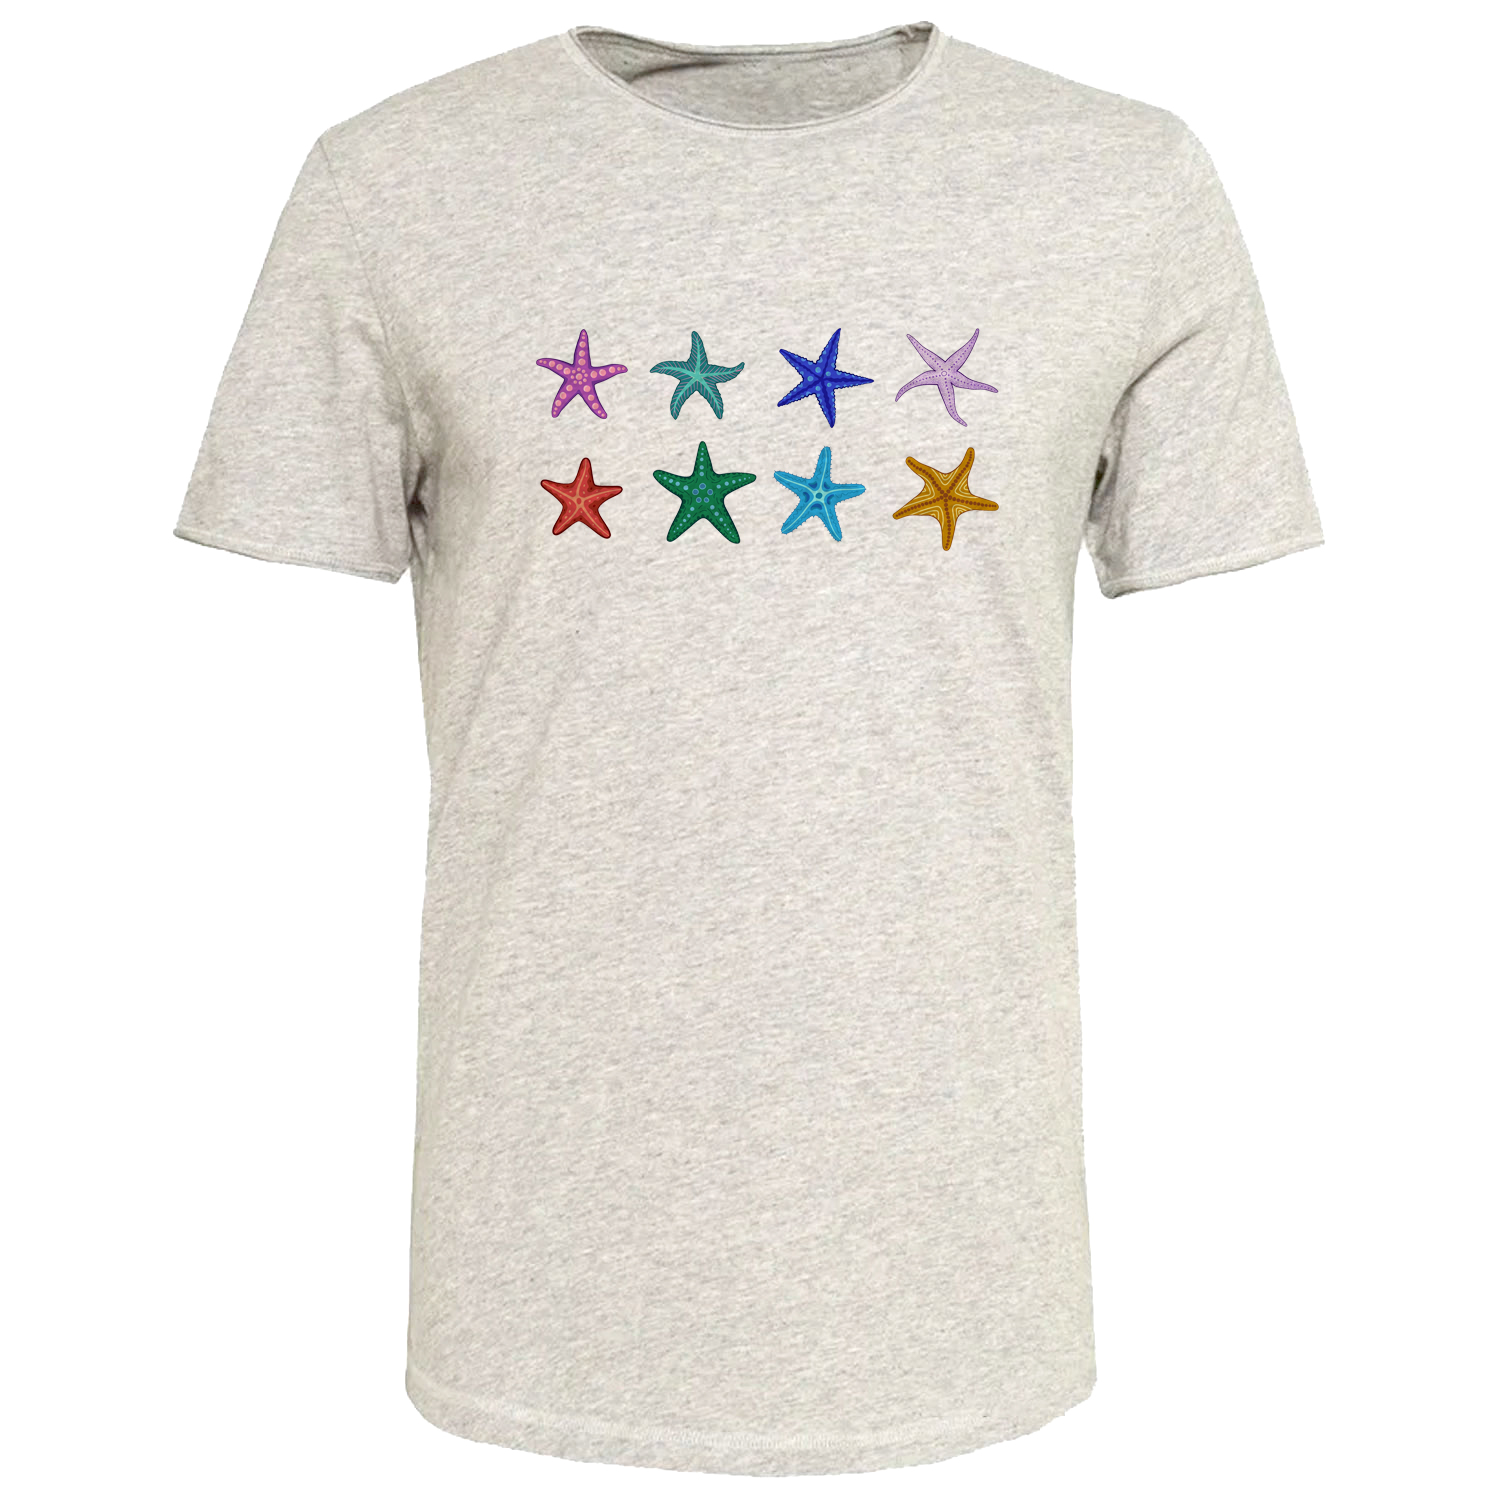 تی شرت آستین کوتاه زنانه مدل ستاره کد J419 رنگ طوسی